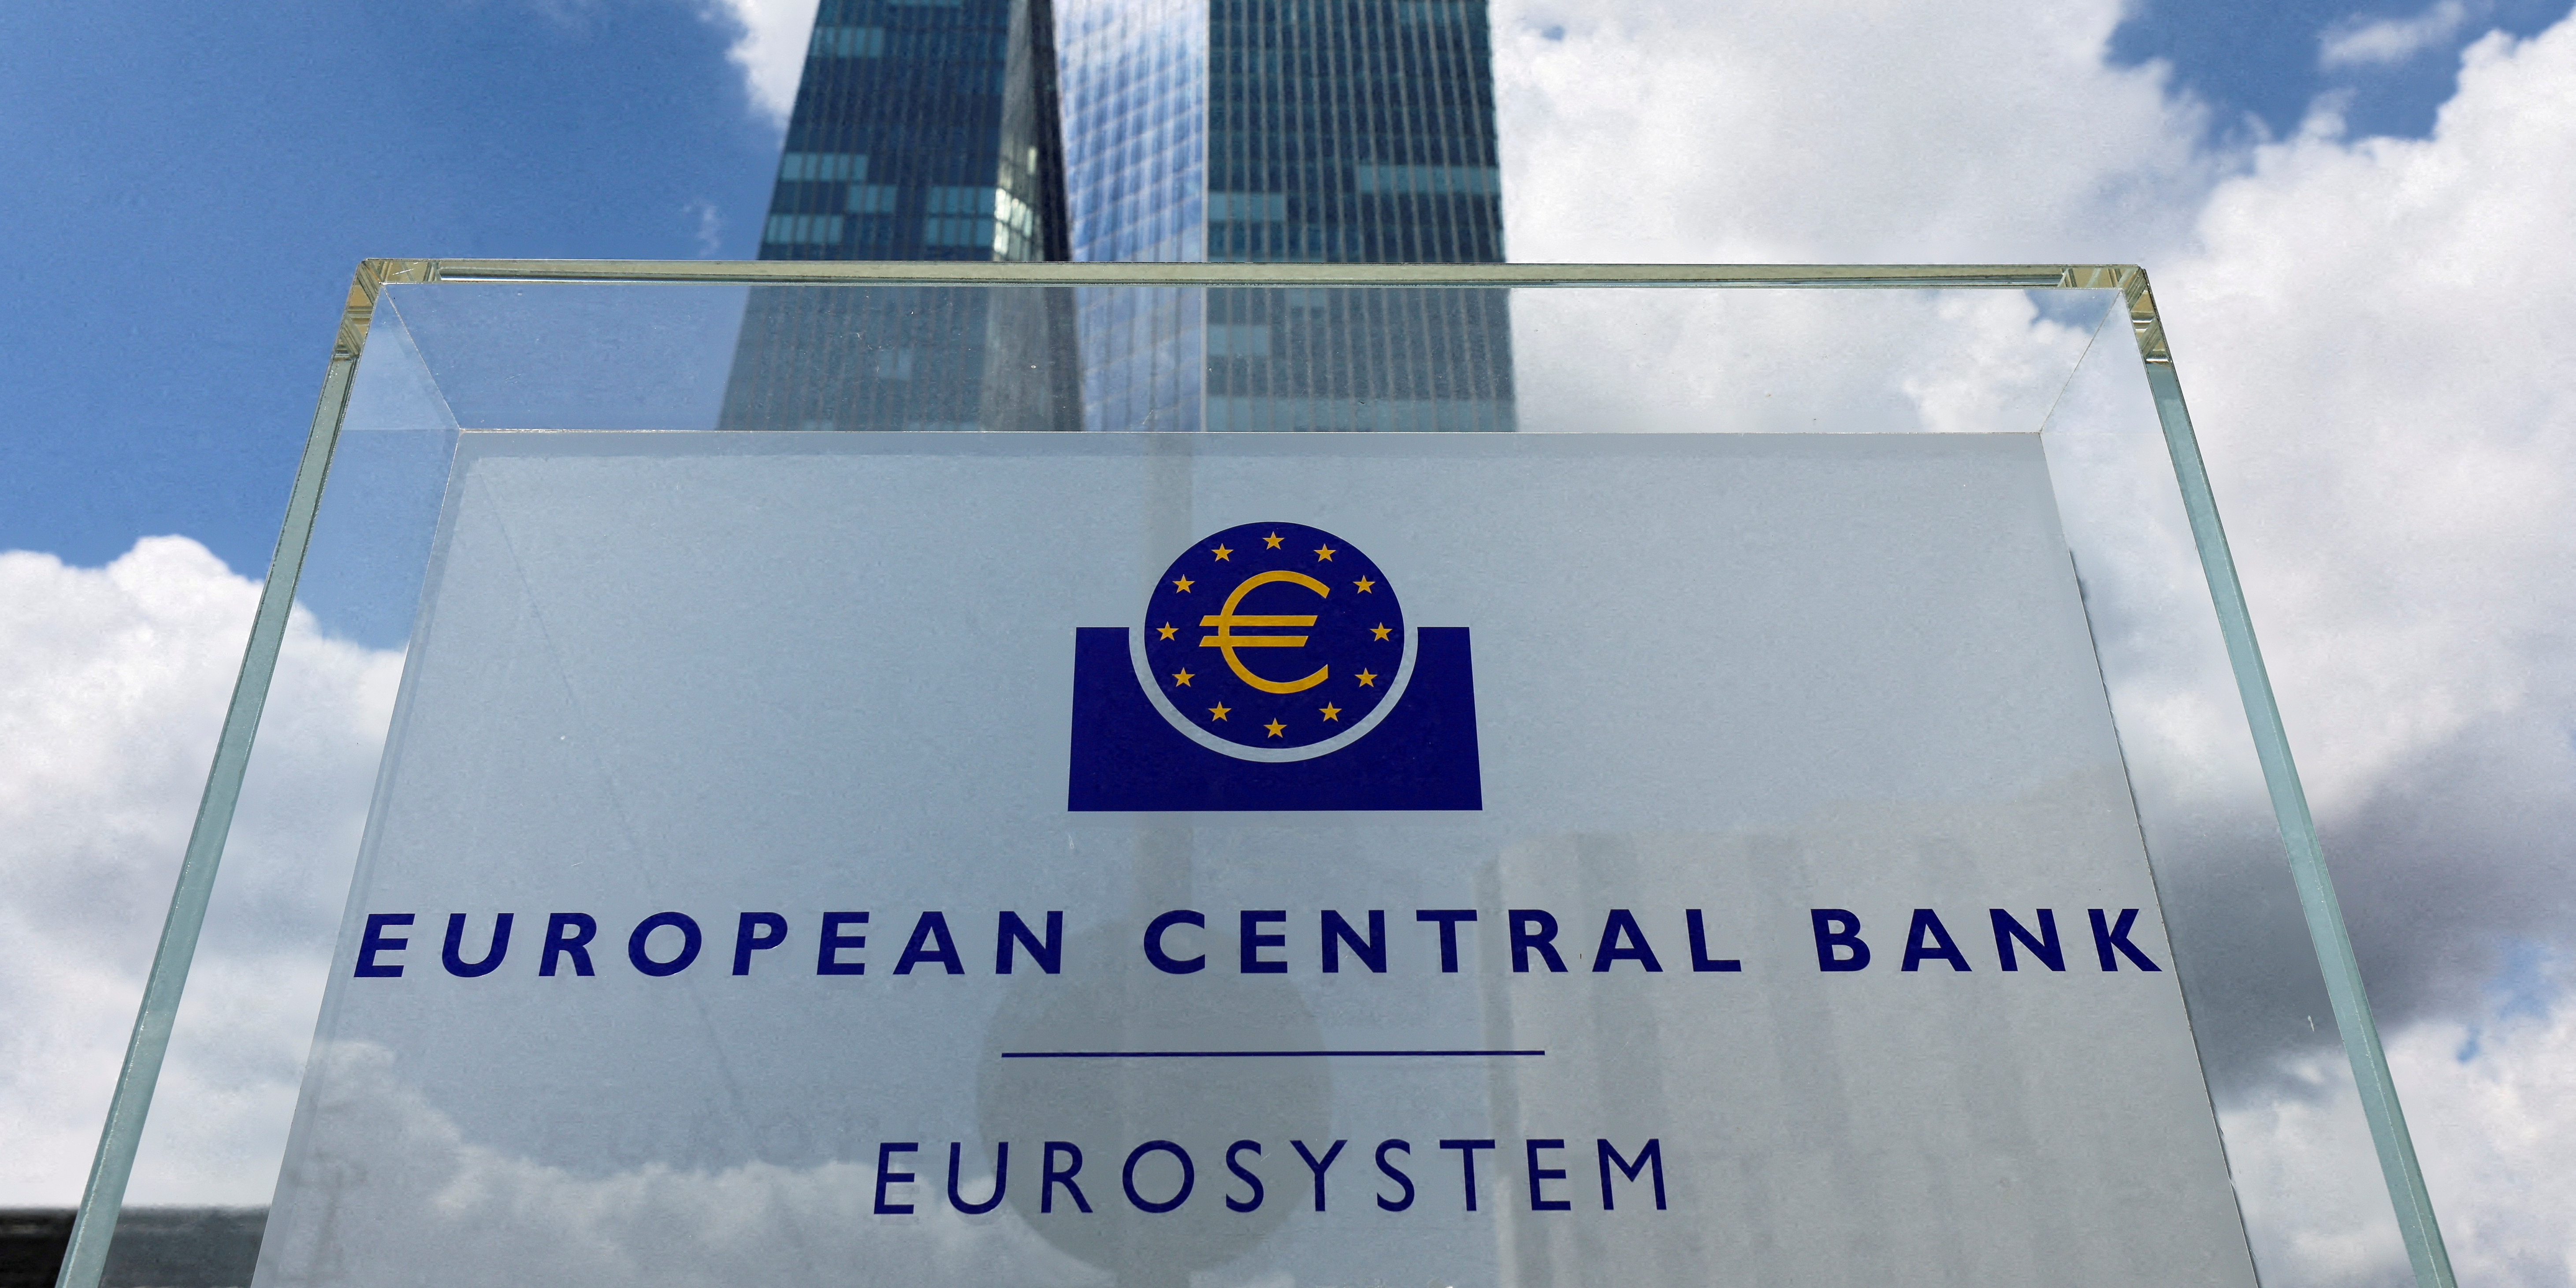 Faillite de SVB, Credit Suisse... La tempête financière met la BCE sous pression au moment de relever ses taux